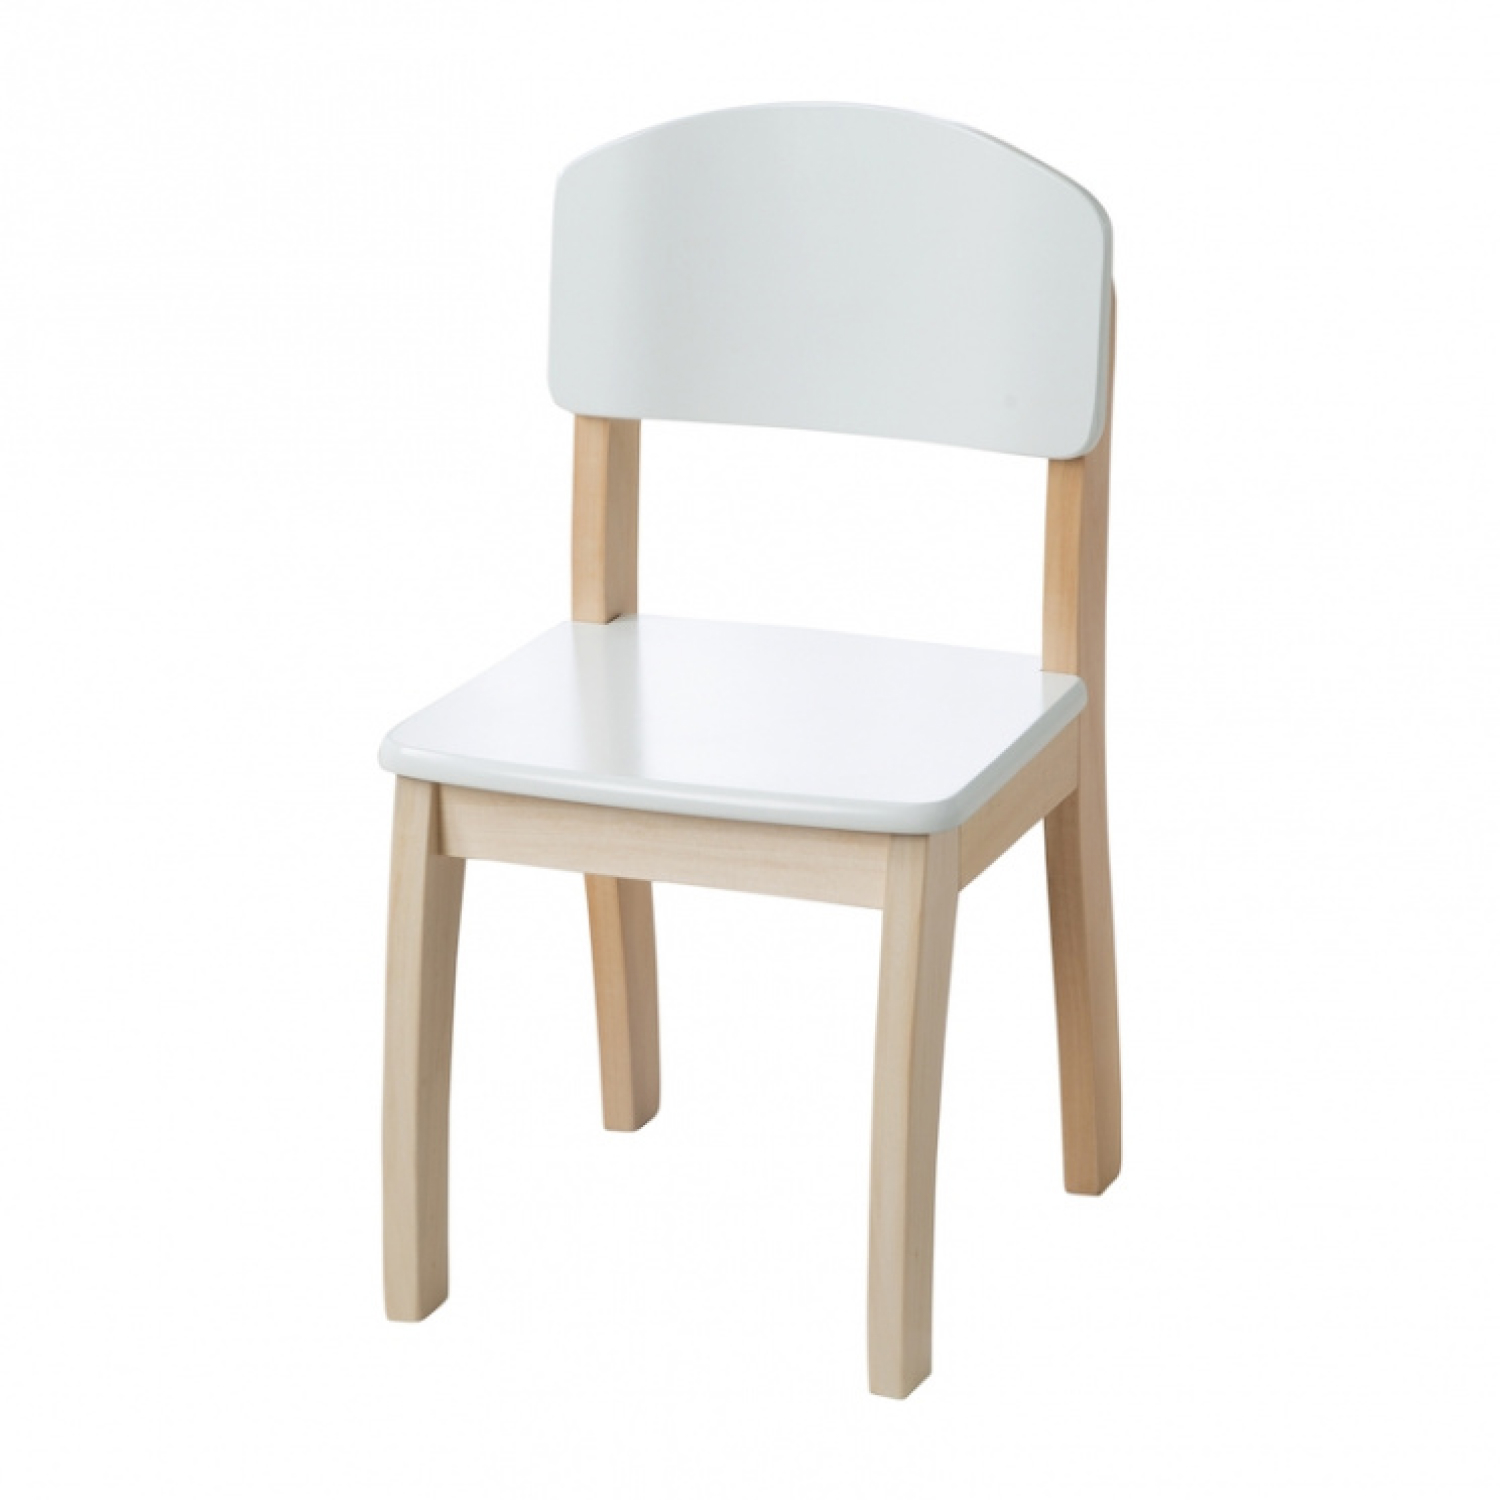 Детский деревянный стульчик белый